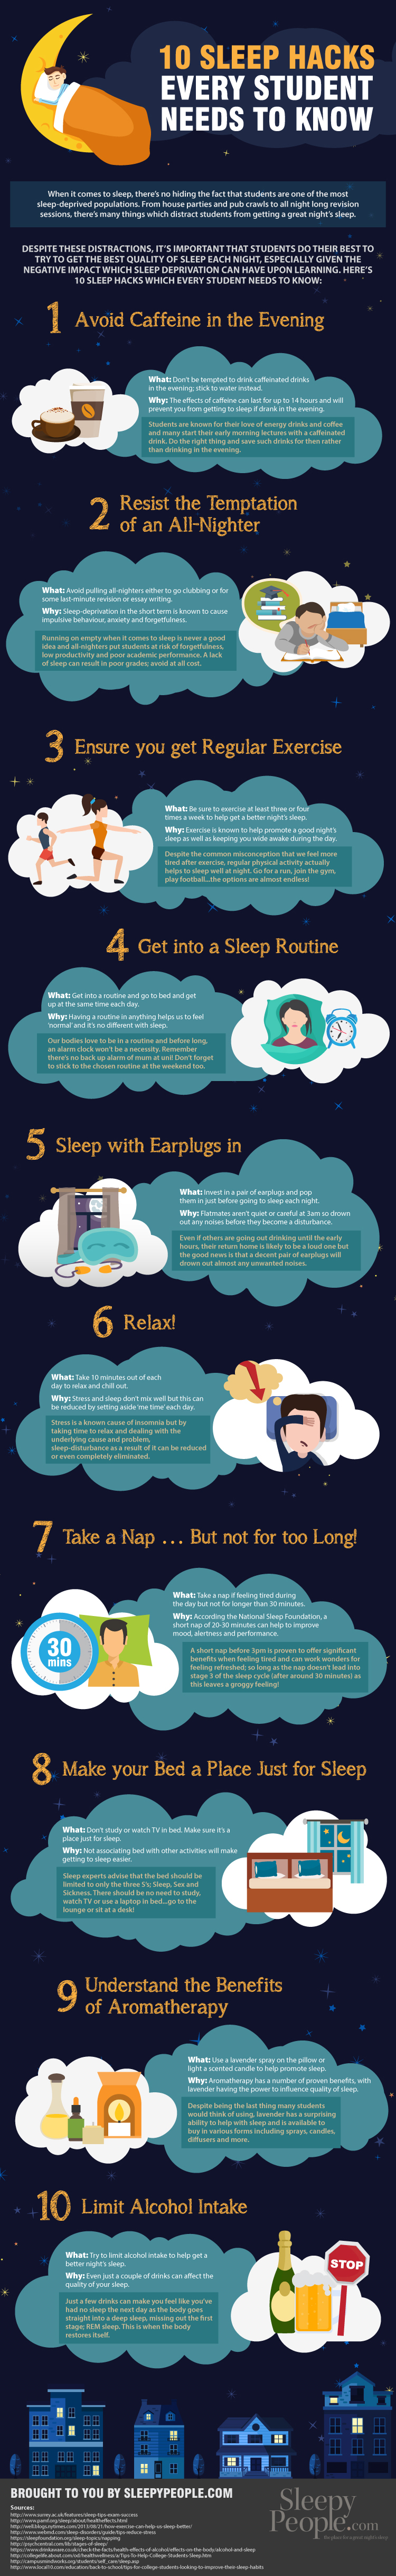 10 Student Sleep Hacks